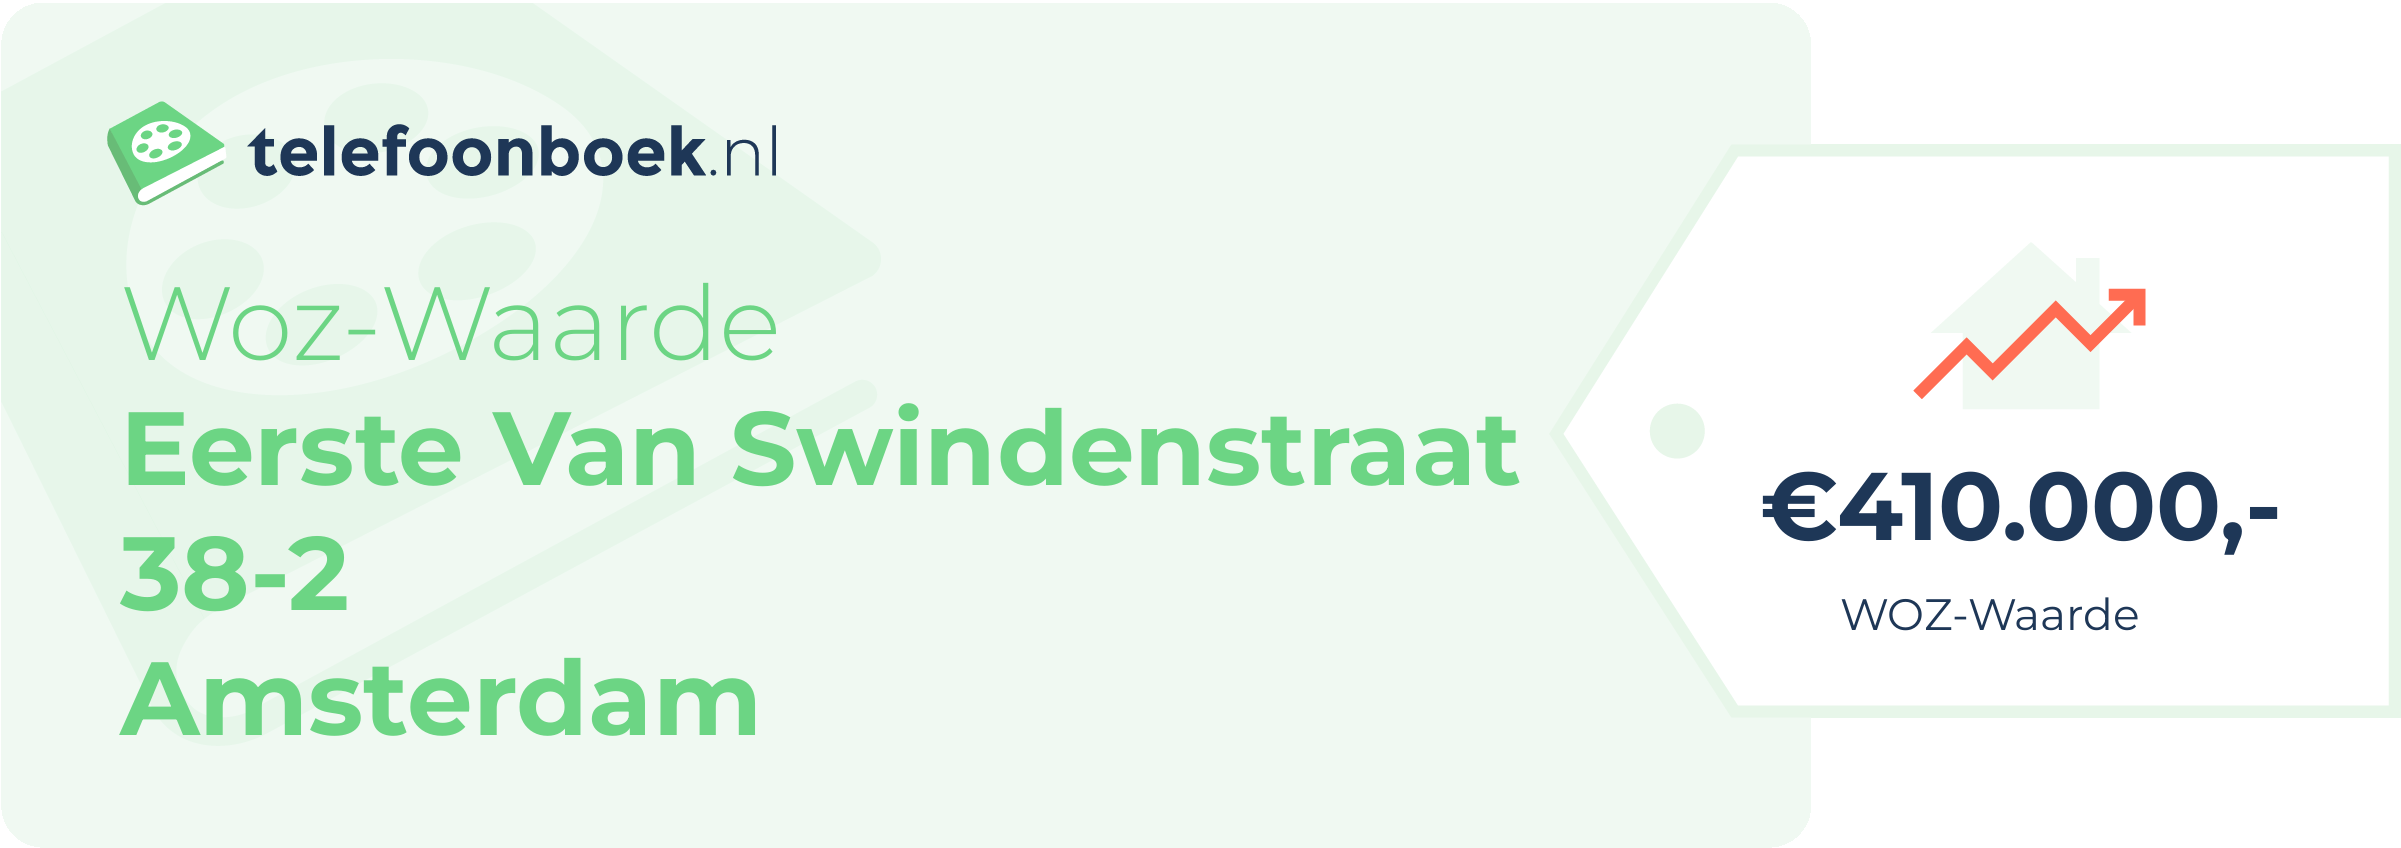 WOZ-waarde Eerste Van Swindenstraat 38-2 Amsterdam